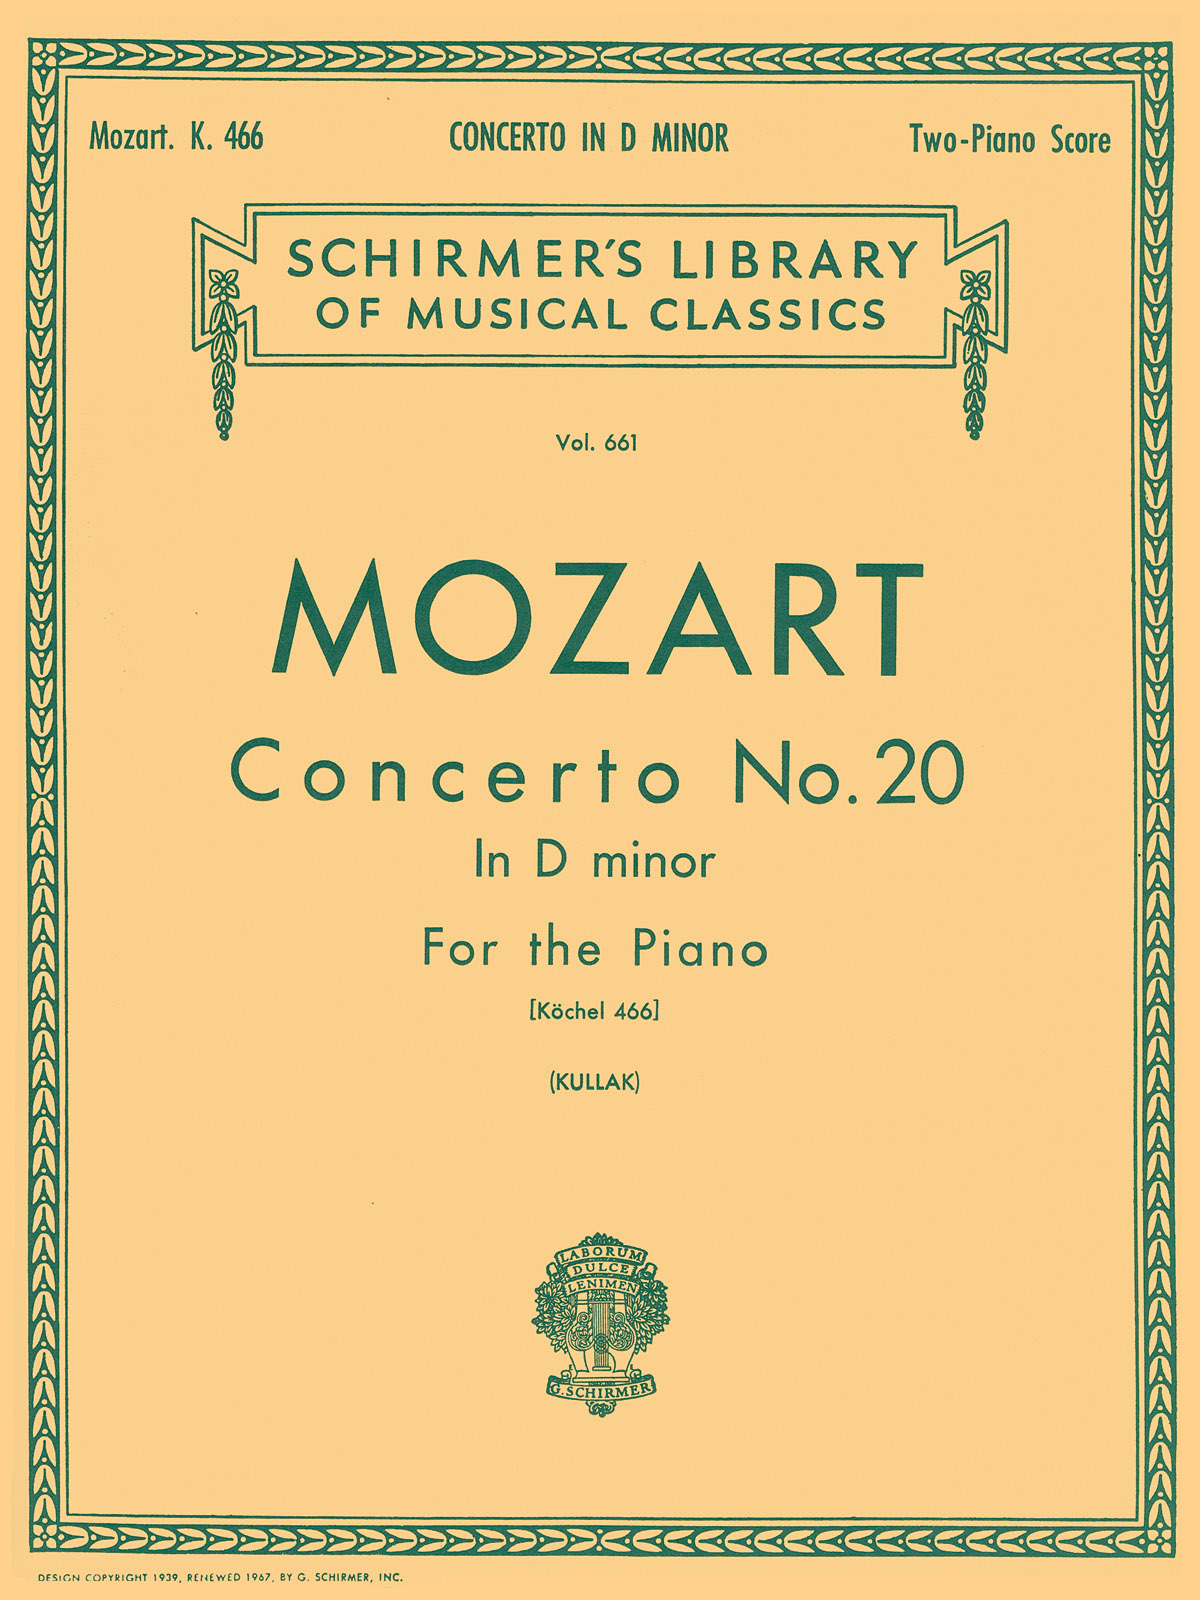 Mozart: Concerto No. 20 in D Minor, K.466